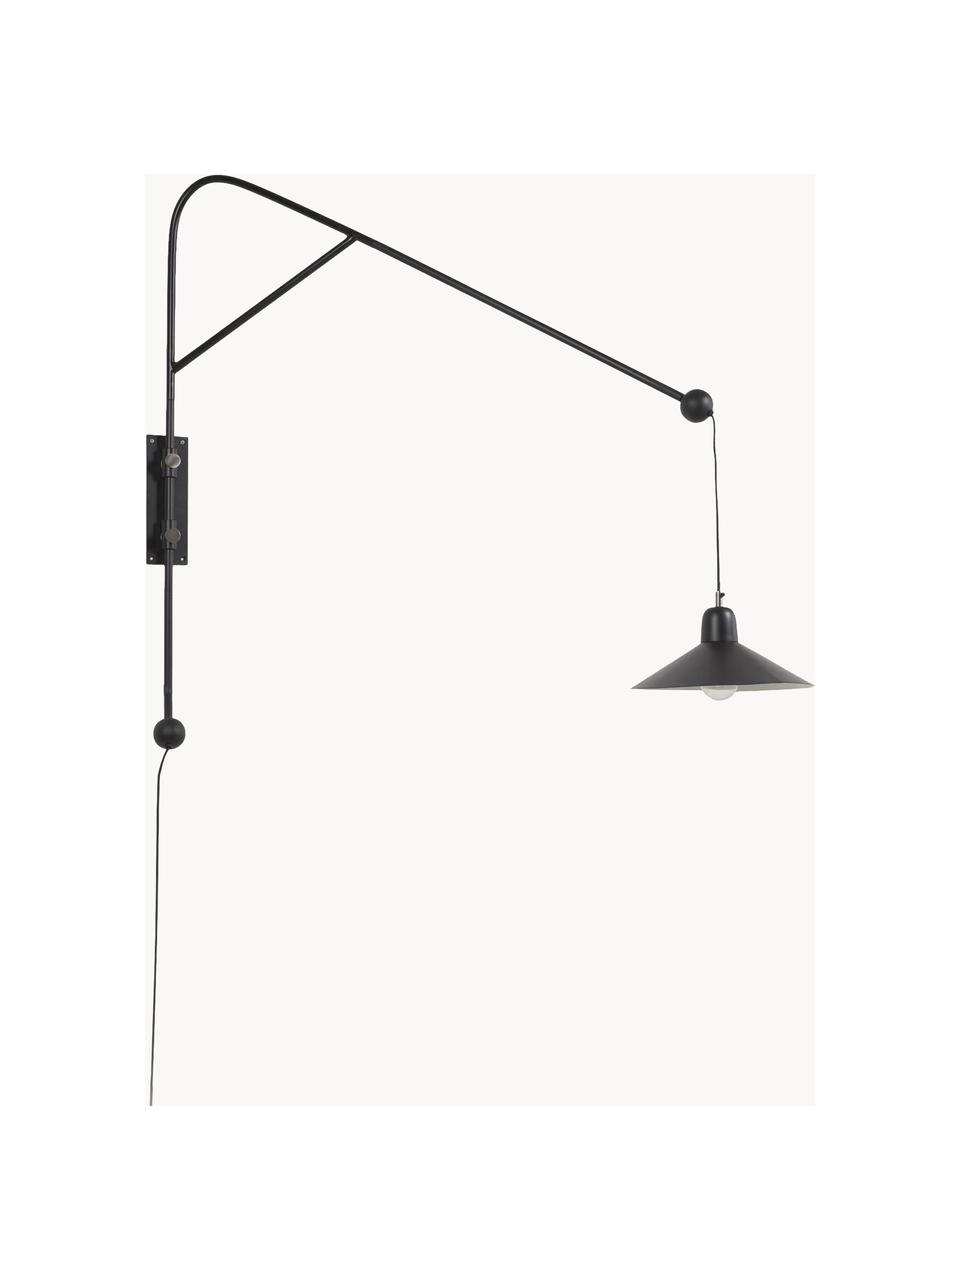 Grote verstelbare wandlamp Eleazar met stekker, Lamp: gepoedercoat metaal, Zwart, B 30 x H 108 cm